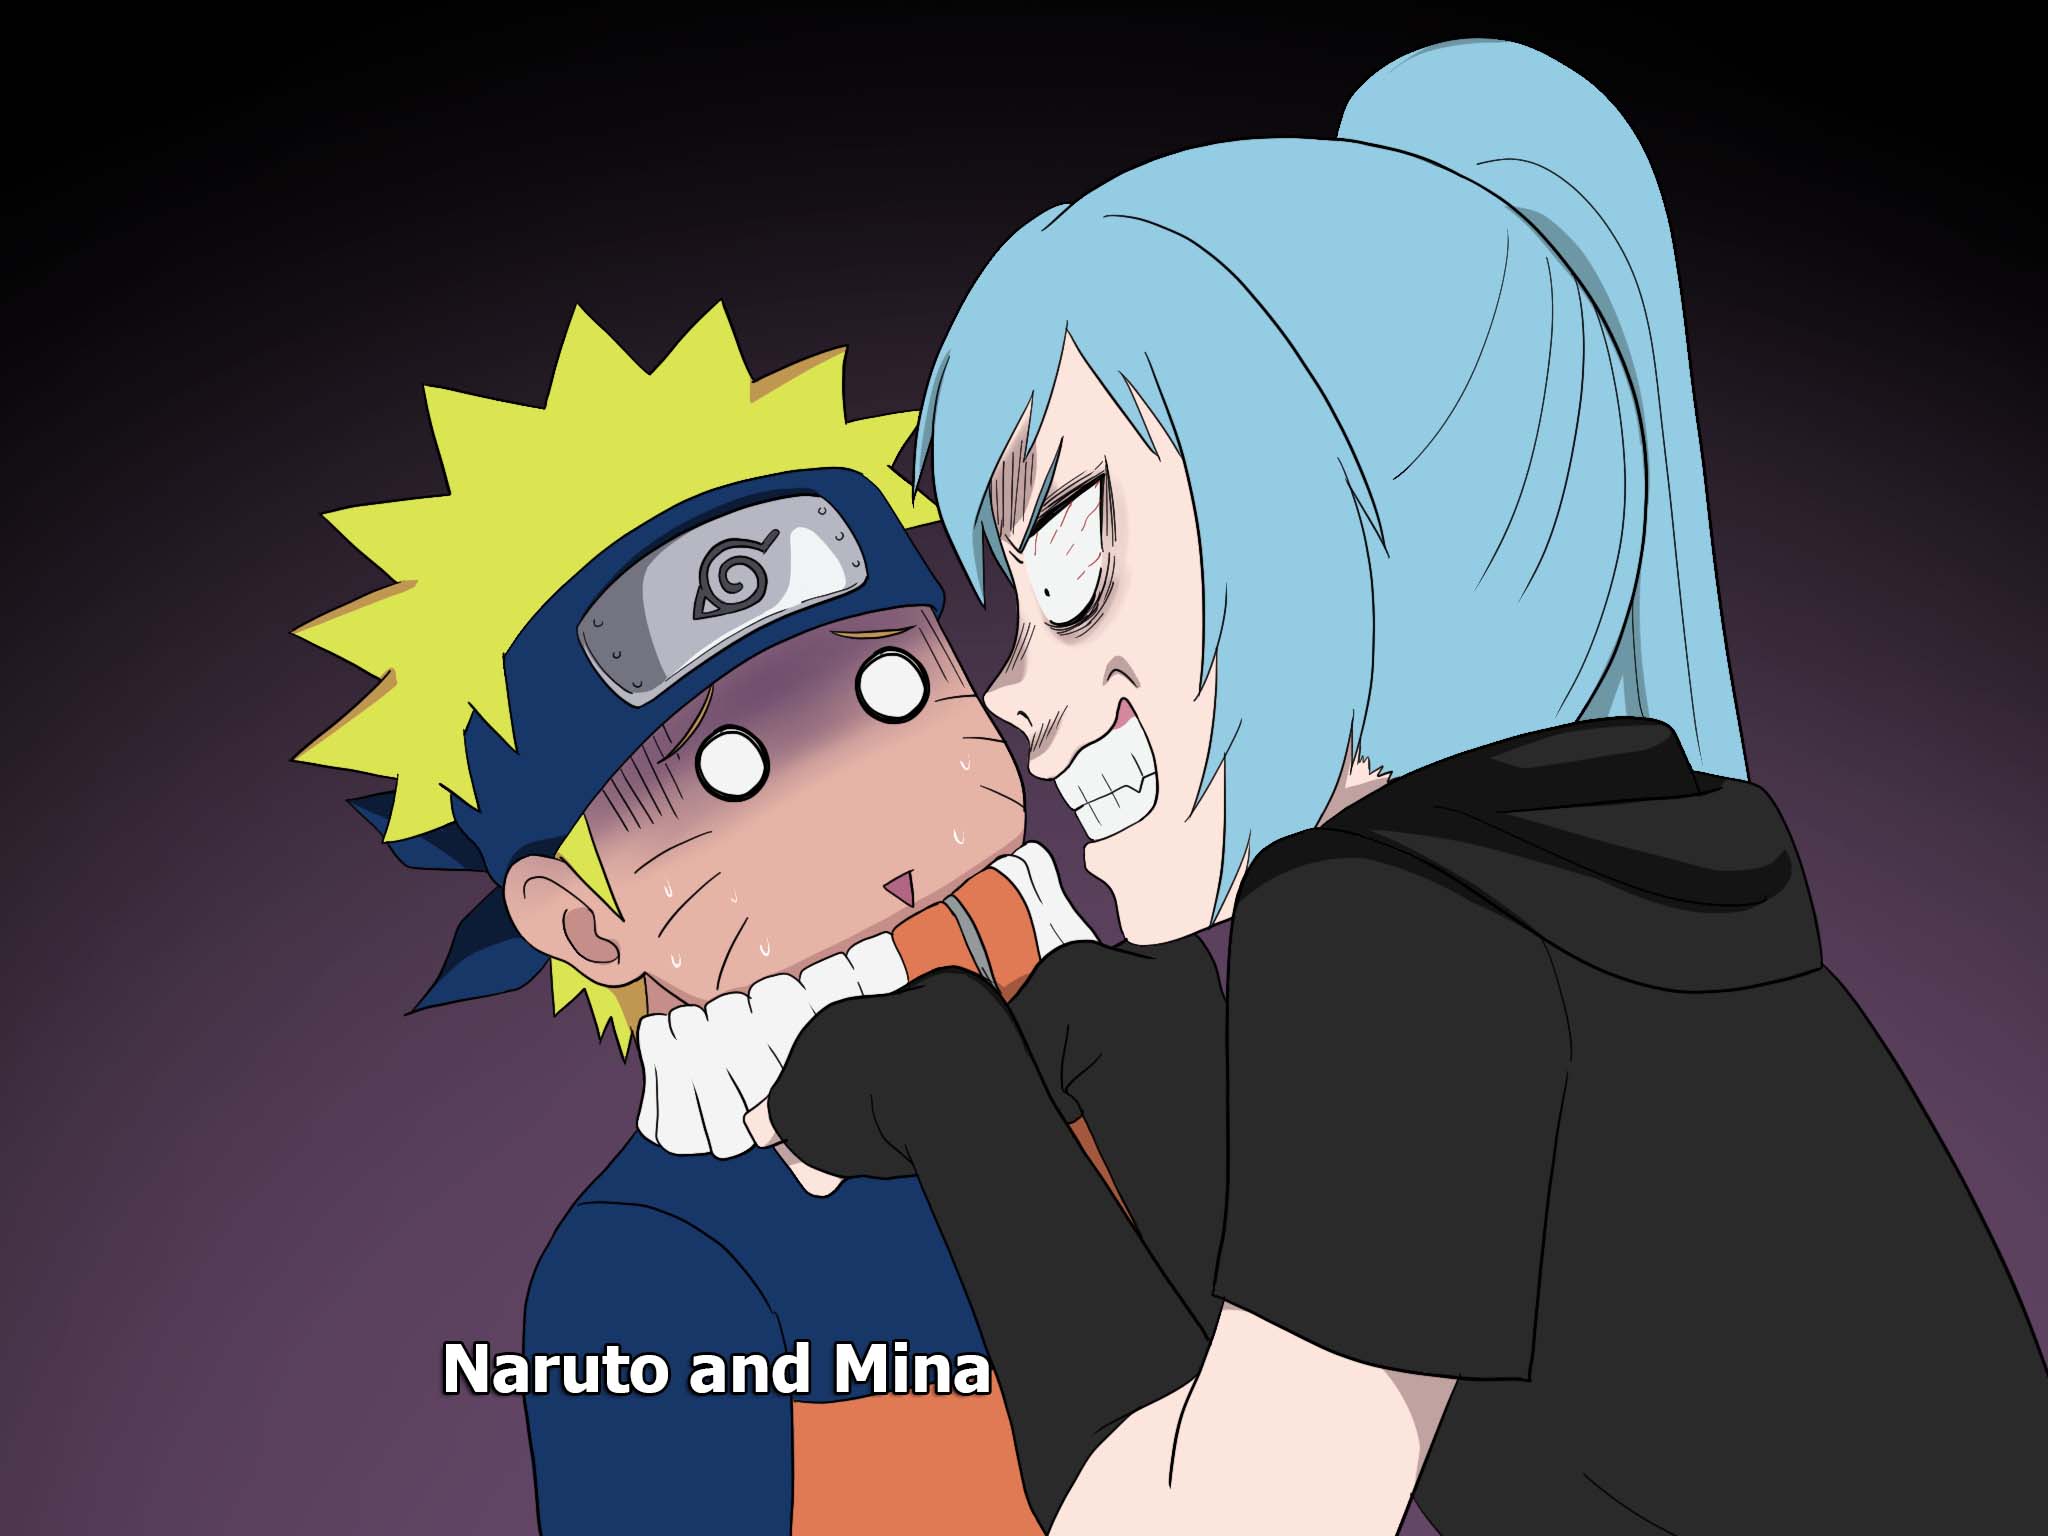 Nếu bạn muốn tìm hiểu về nhân vật Mina trong Naruto, thì hãy truy cập ngay vào Naruto OC Wiki. Tại đây, bạn sẽ có được tất cả các thông tin về nhân vật này, cùng với những hình ảnh đầy màu sắc và sống động.